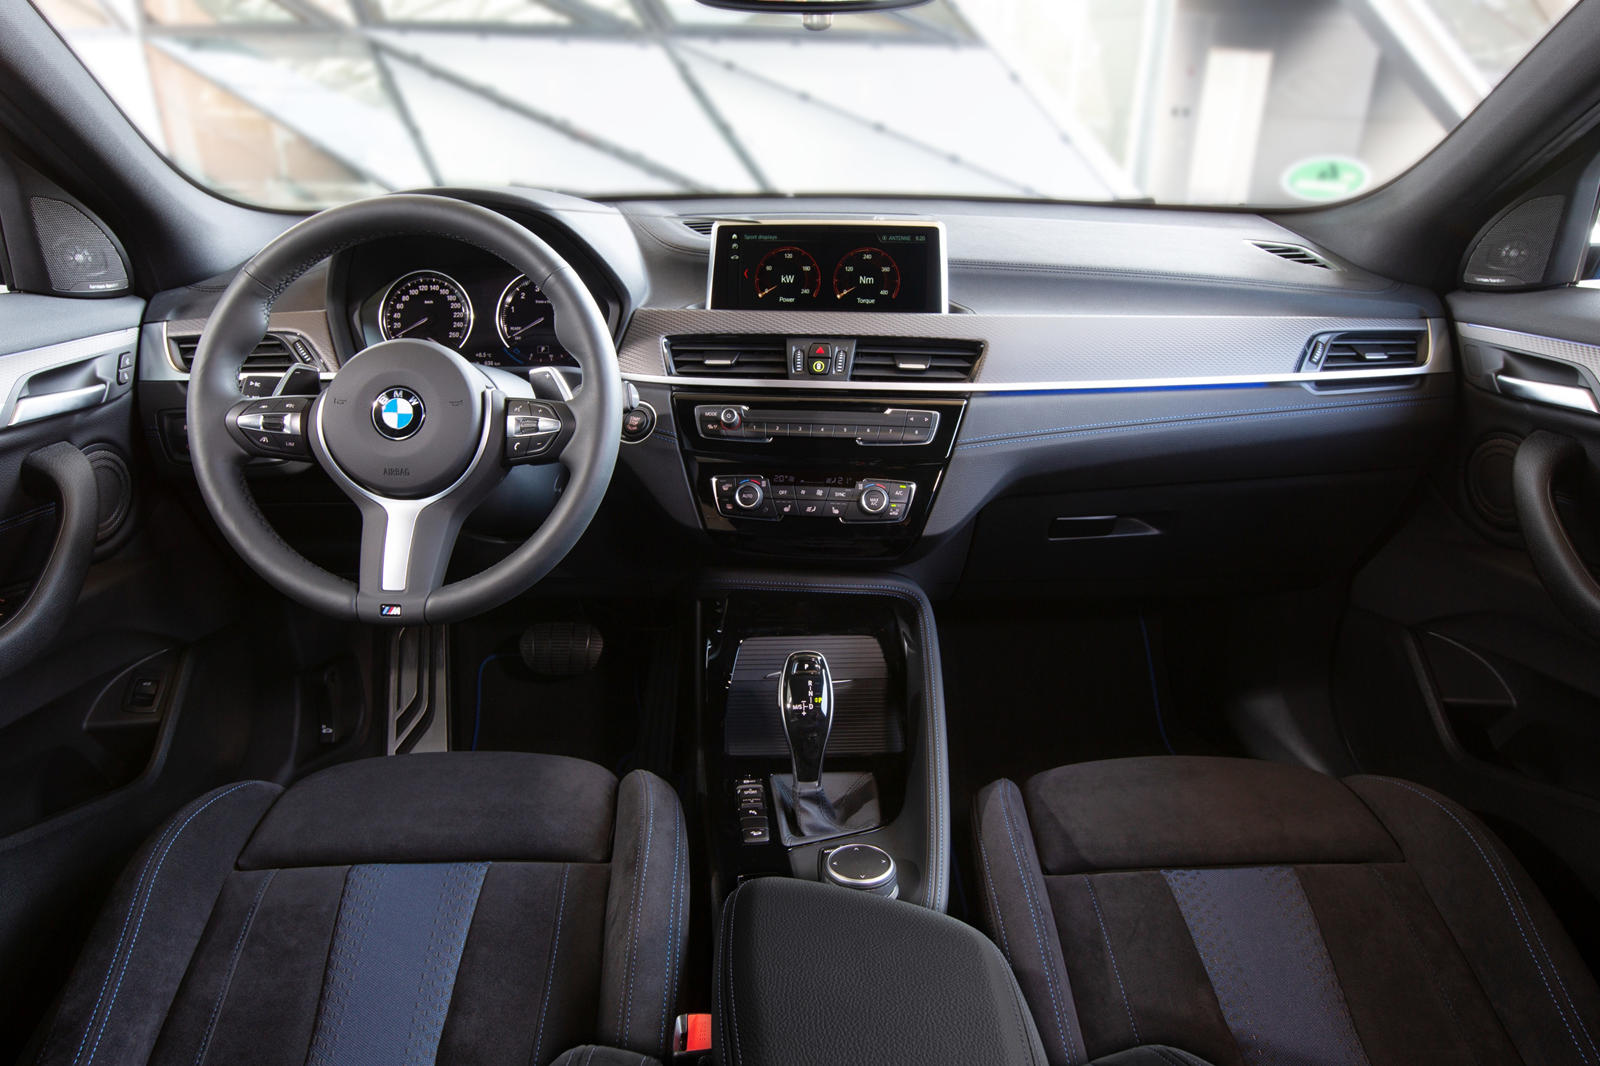 2018 BMW X2 Interior Photos | CarBuzz